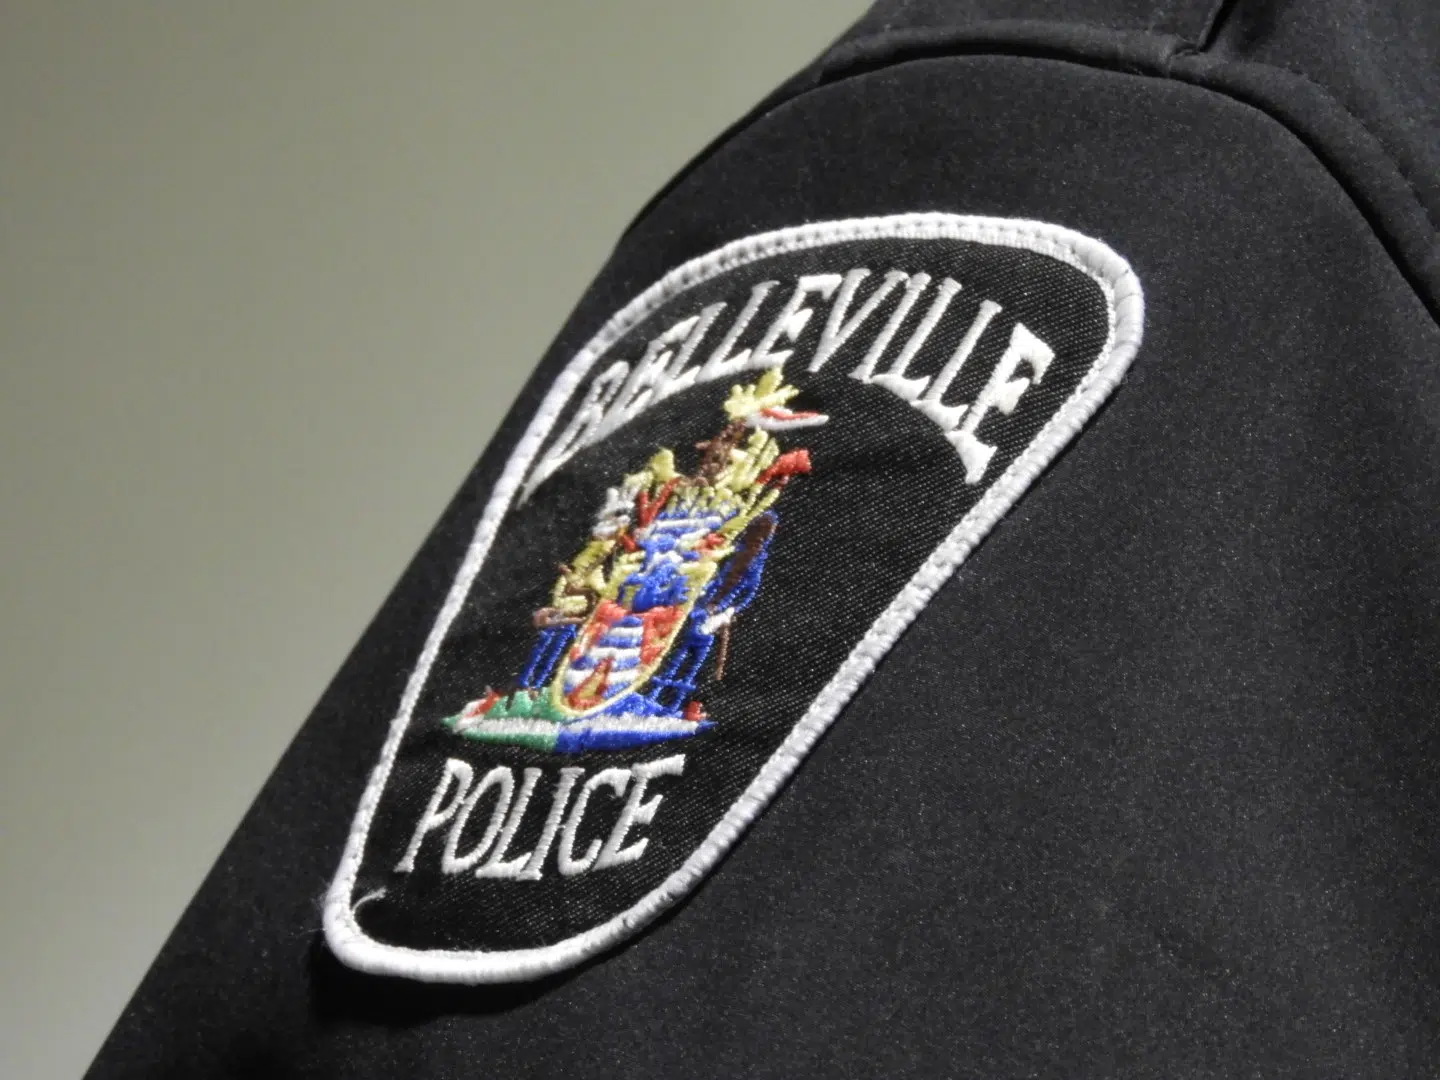 Belleville Police briefs